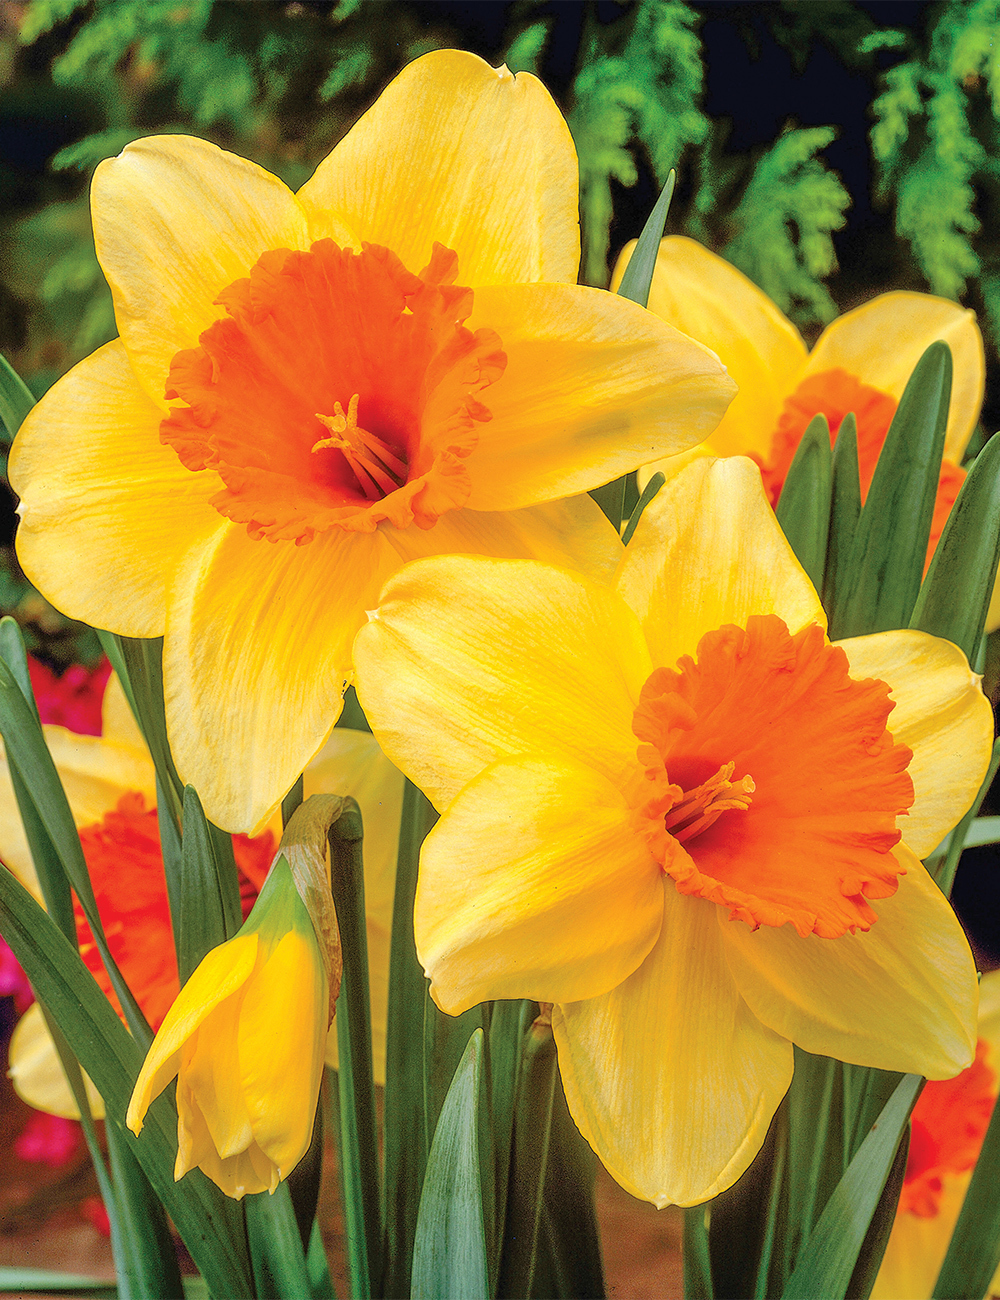 Daffodil Fortissimo